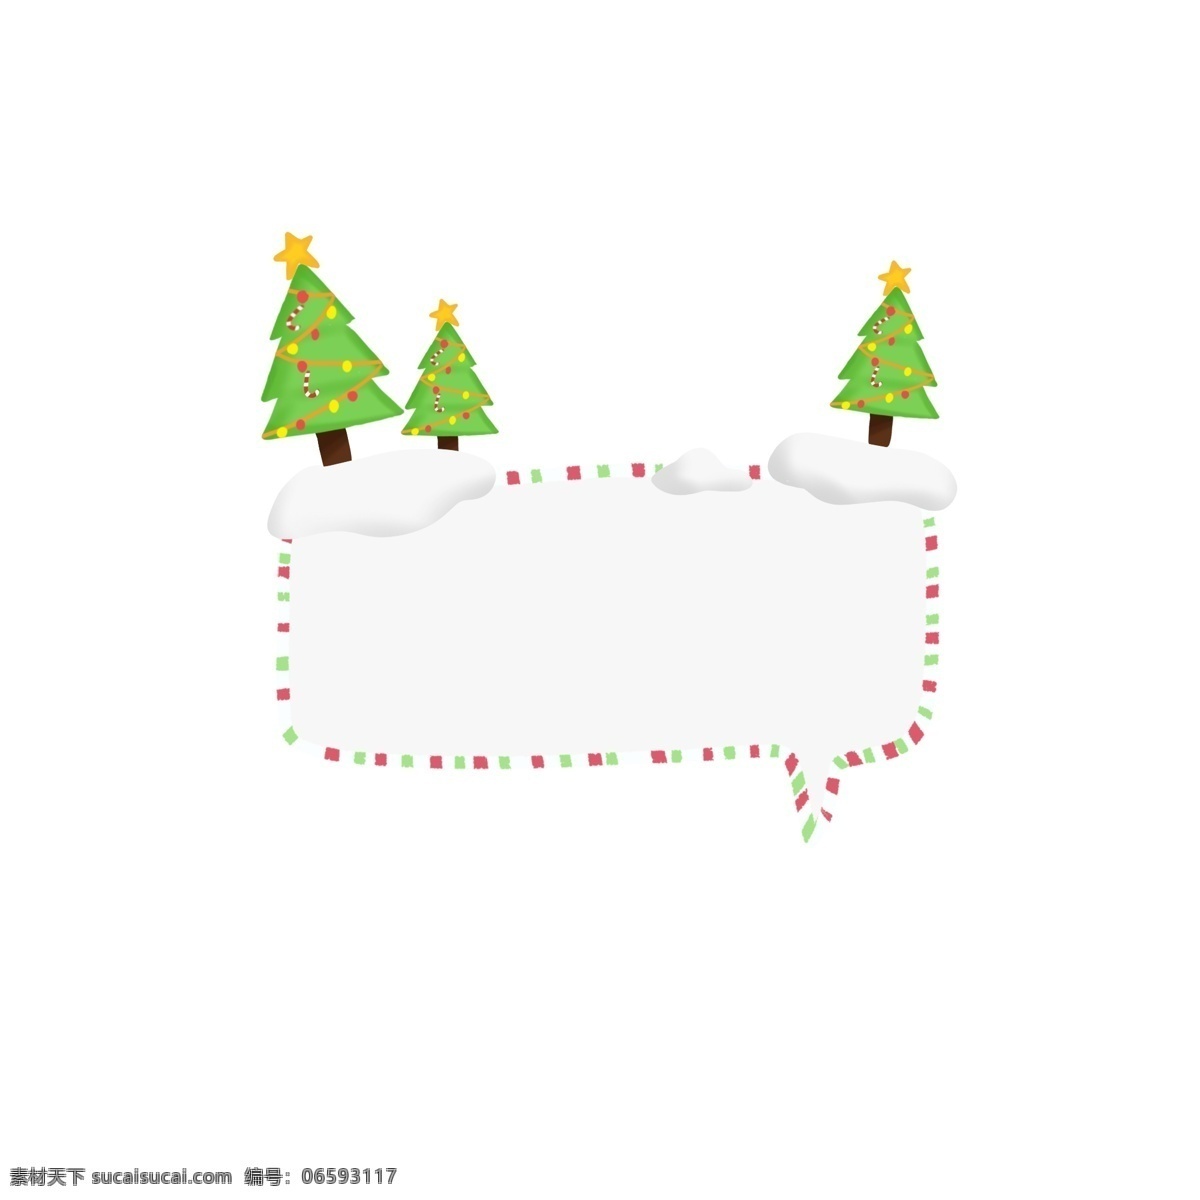 圣诞节 手绘 可爱 圣诞 边框 对话框 元素 可爱边框 圣诞树 可爱对话框 圣诞节对话框 圣诞节边框 圣诞装饰物 圣诞节装饰 松树 圣诞树装饰